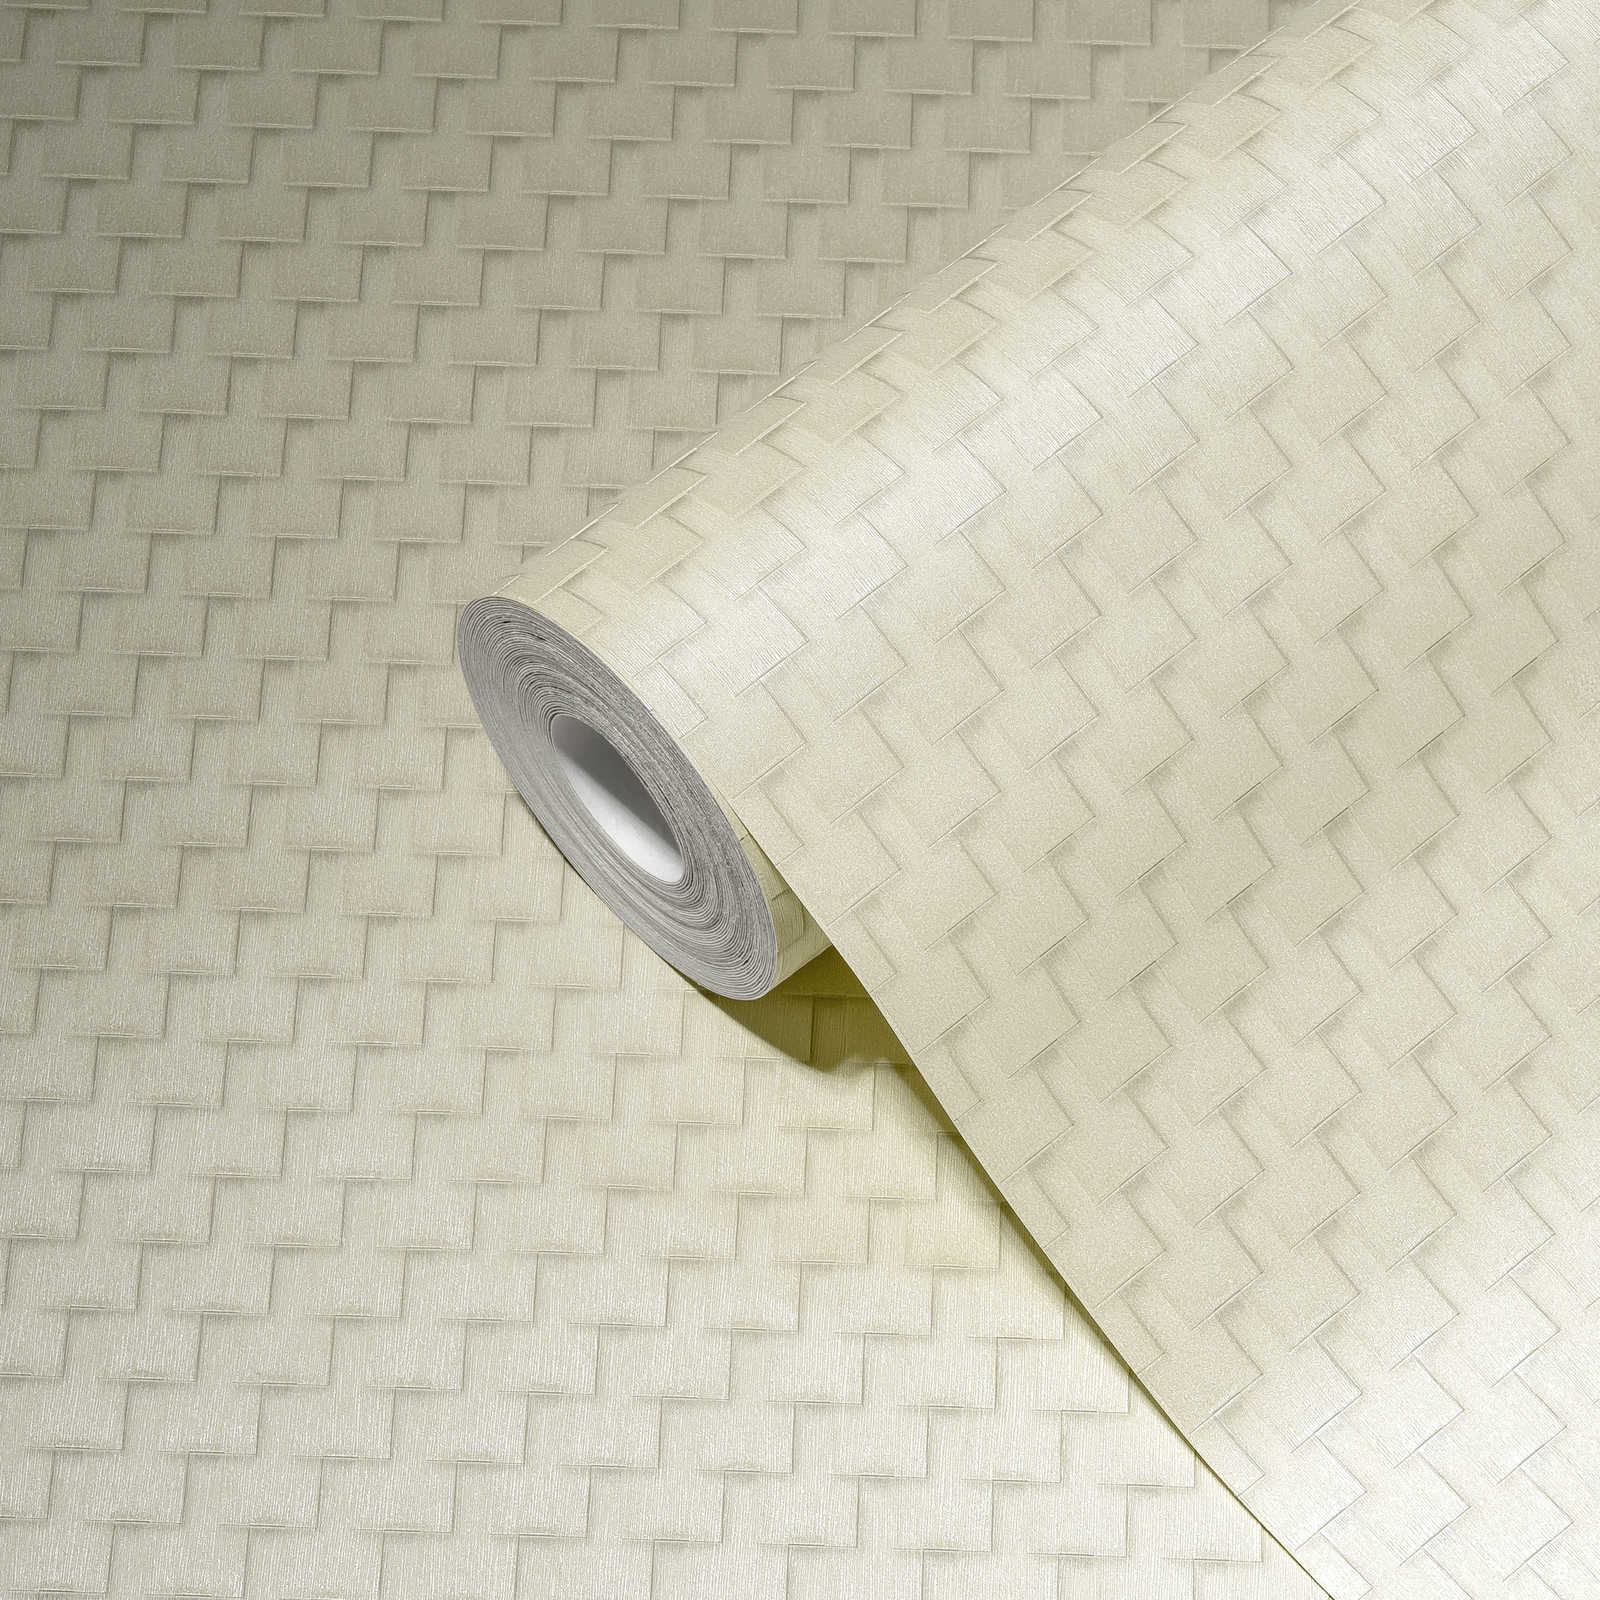             Gemusterte Tapete mit Facetten-Design und 3D-Effekt – Weiß, Grau, Silber
        